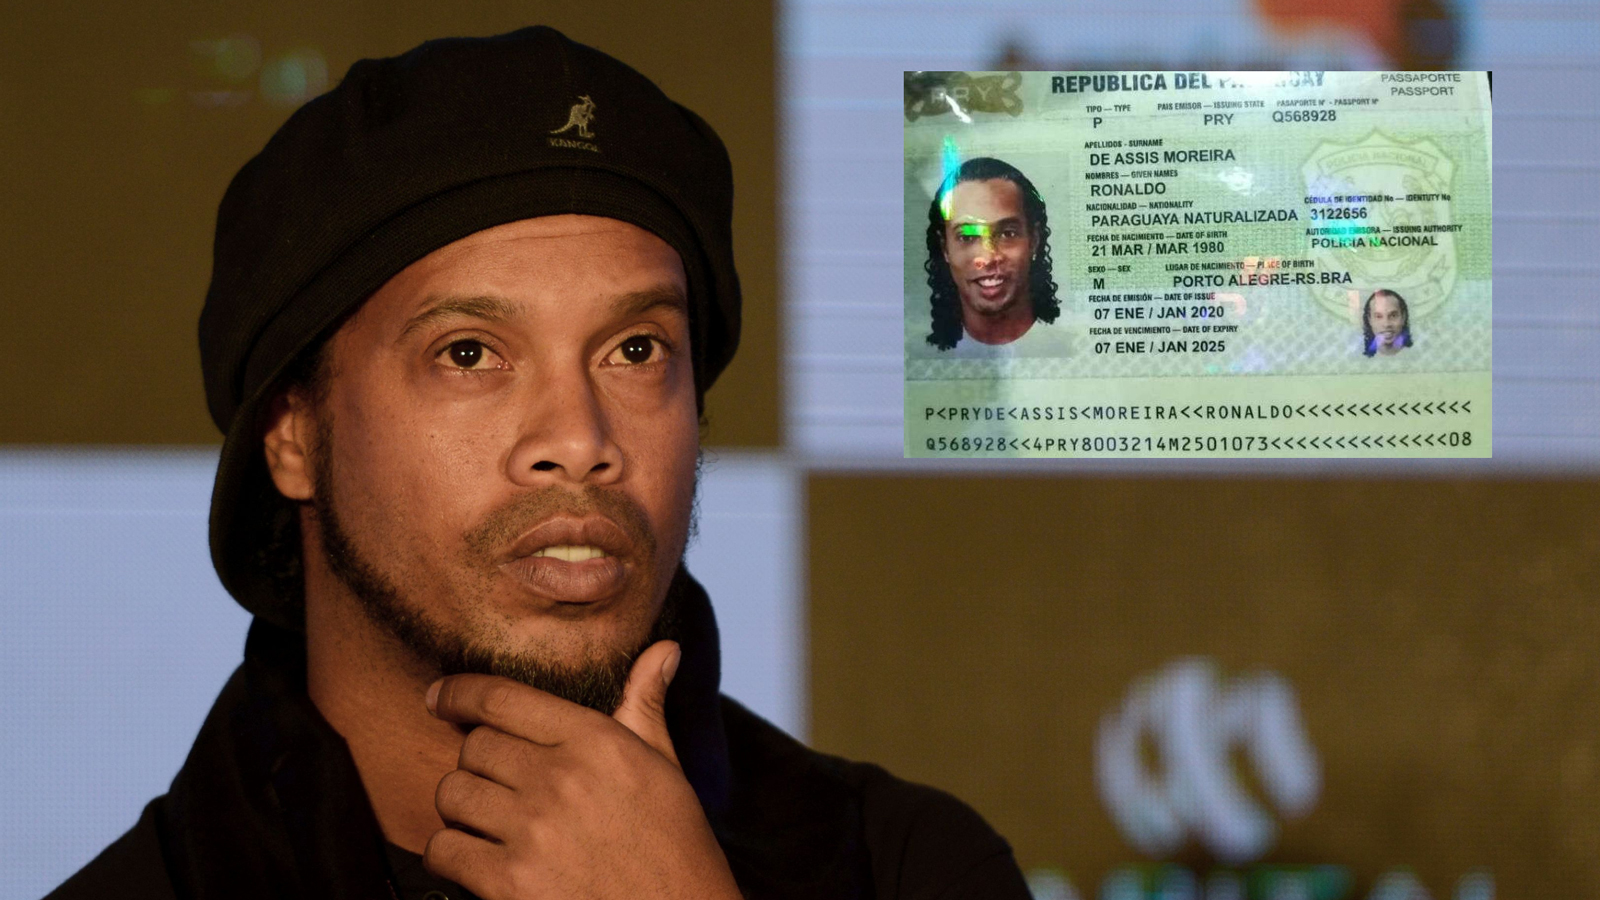 Huyền thoại Ronaldinho tuổi 40: Sau ánh hào quang là bi kịch sinh nhật trong tù - 10